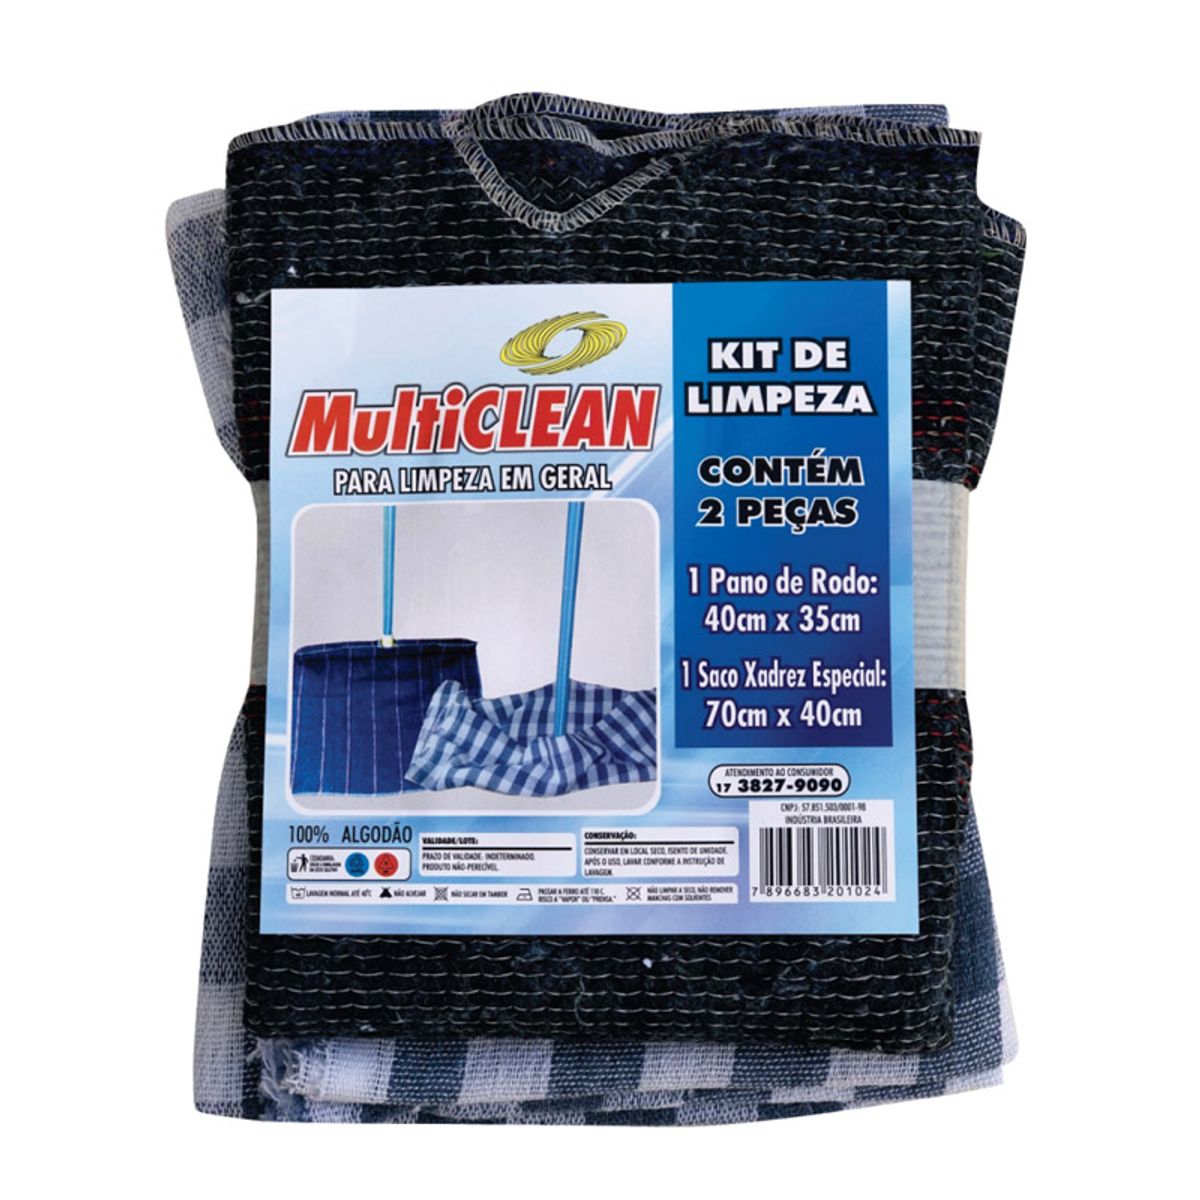 Kit de Limpeza Geral Multiclean 2 Peças